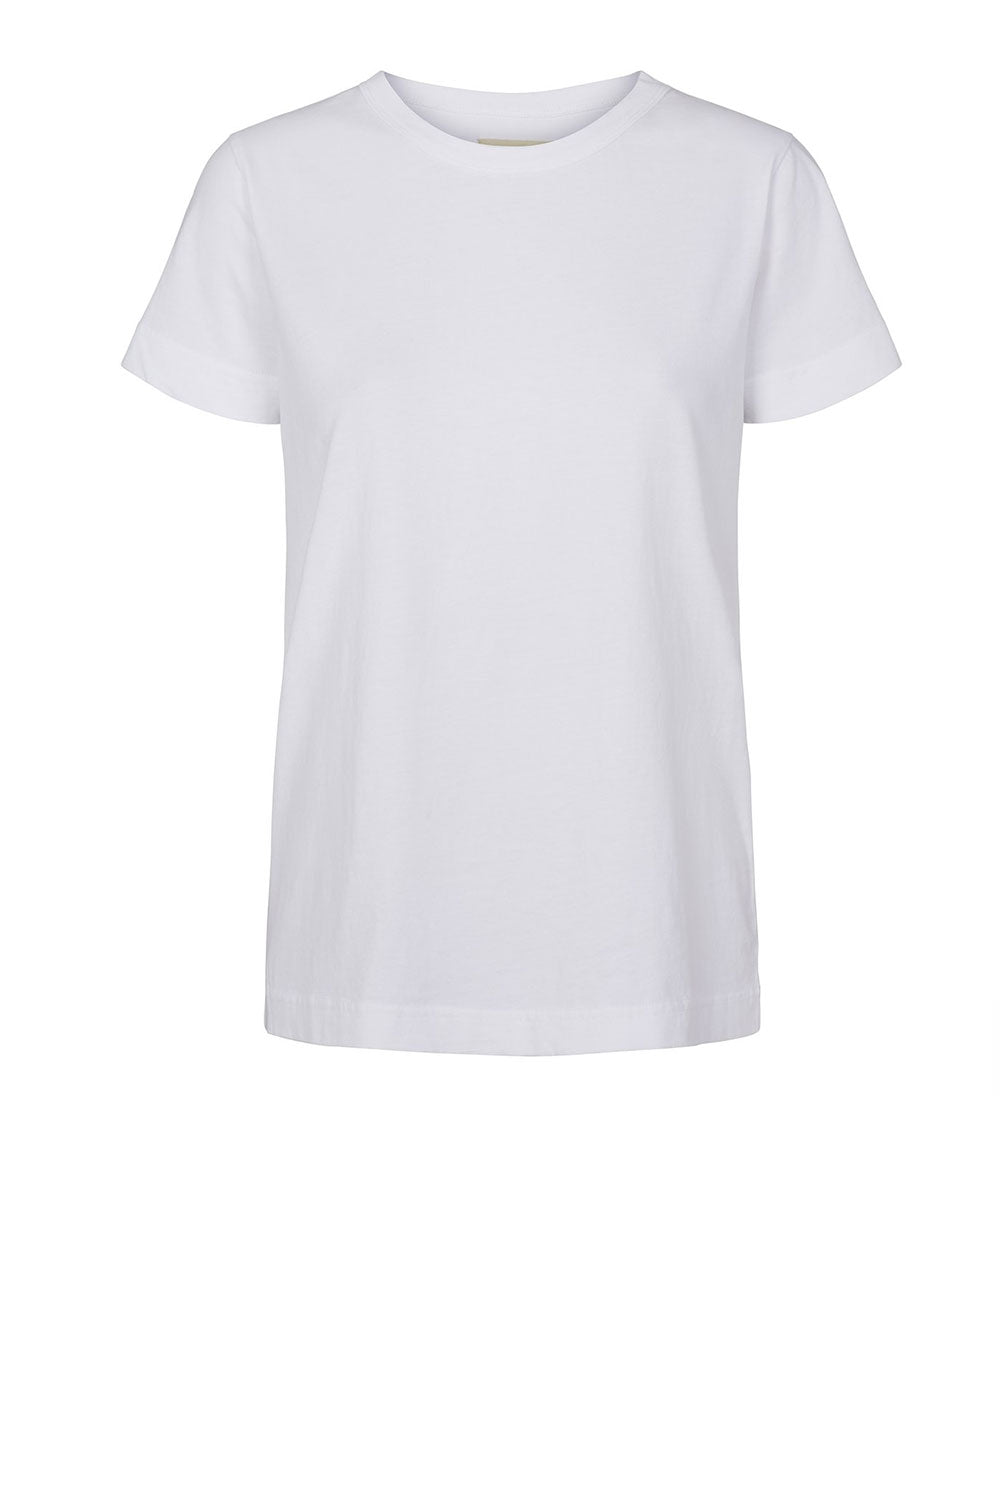 Signe T-shirt White